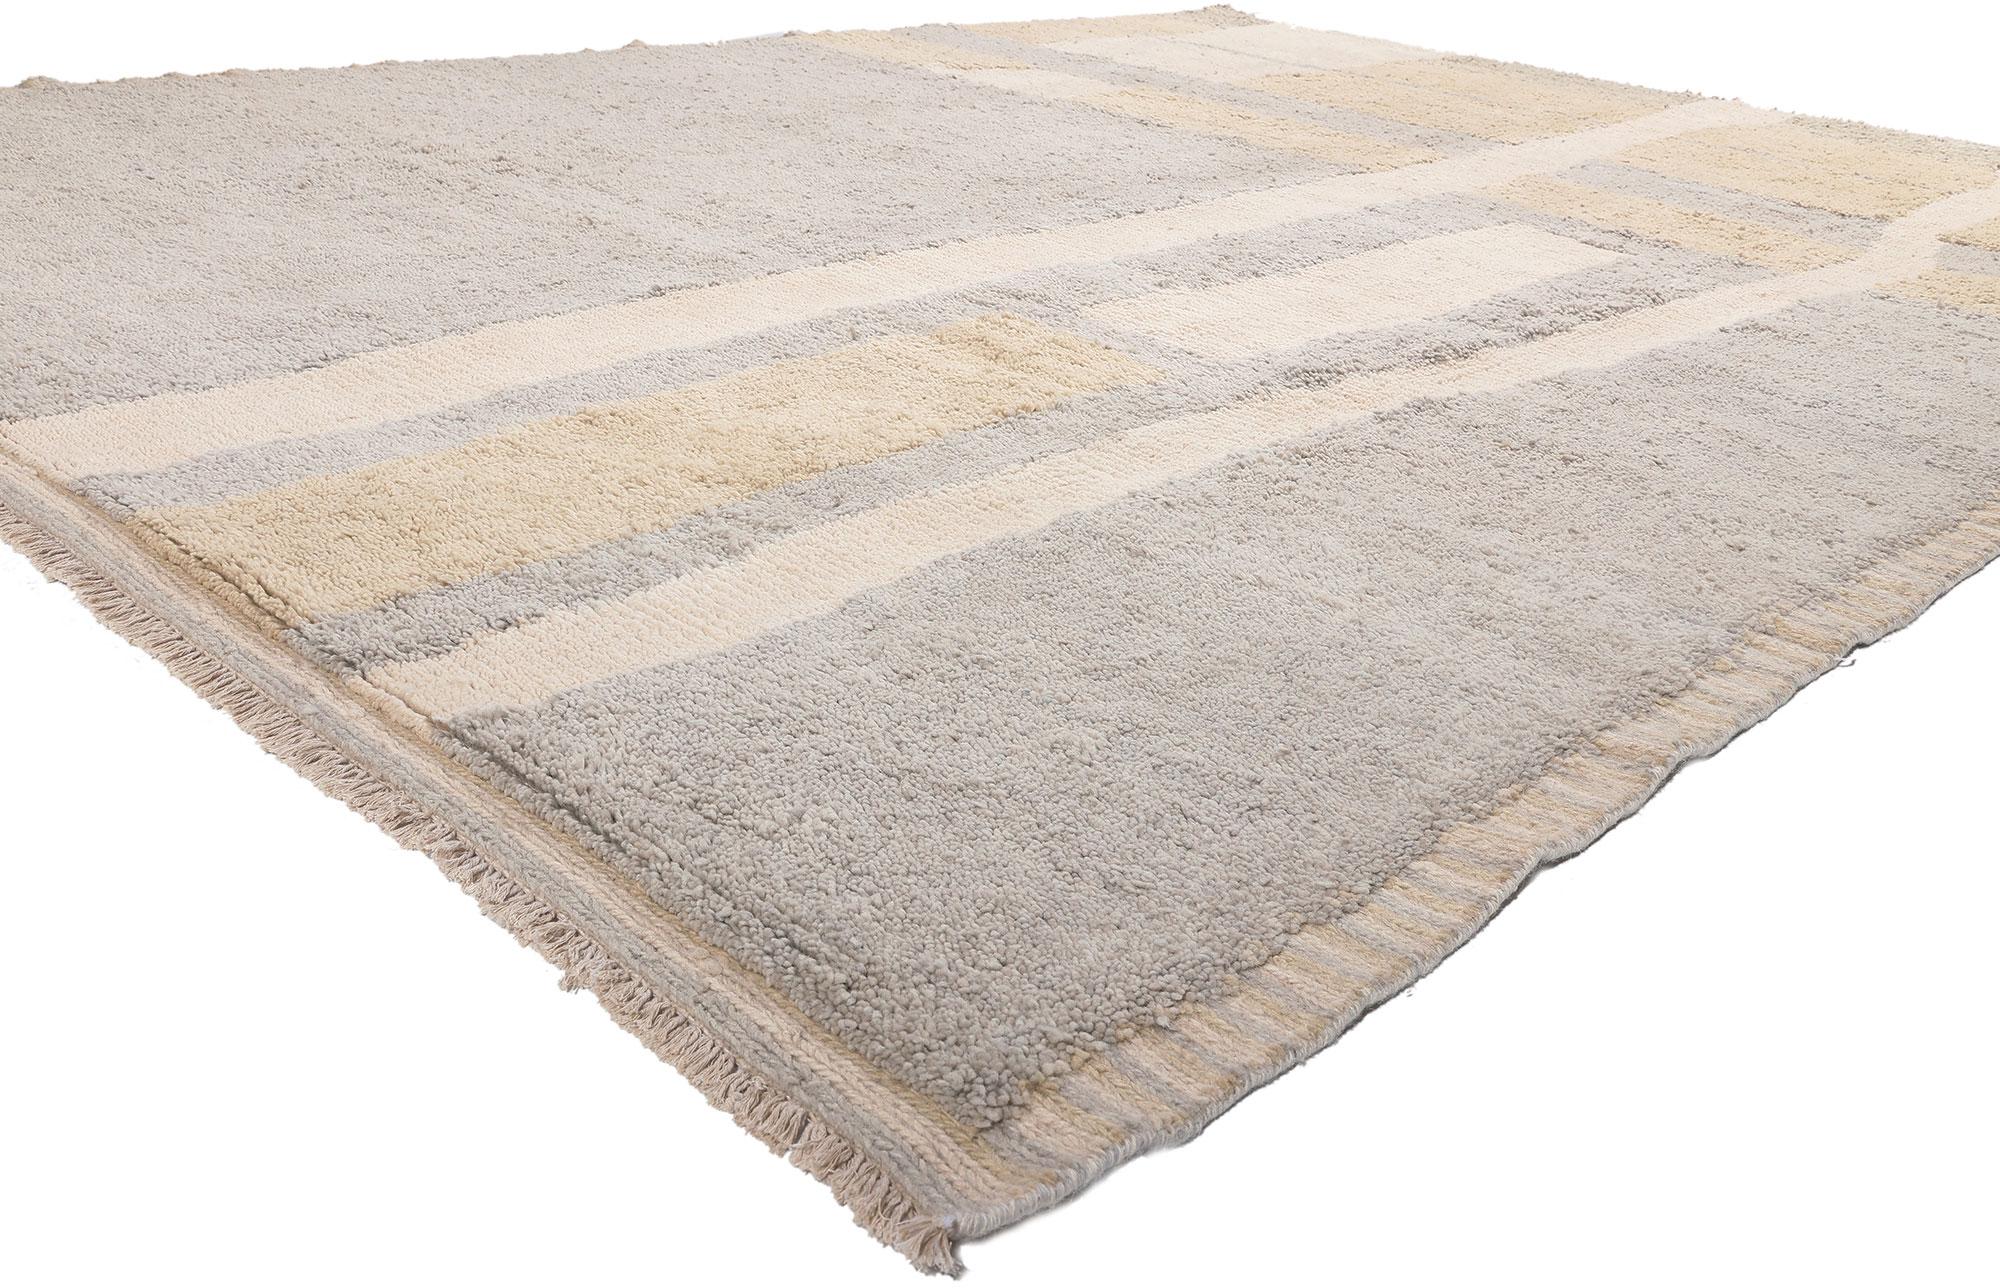 81005 Neutraler erdfarbener marokkanischer Teppich, 09'00 x 12'00. Dieser handgeknüpfte marokkanische Wollteppich, der Elemente des organisch-modernen Stils mit unglaublichen Details und Texturen widerspiegelt, ist eine fesselnde Vision gewebter